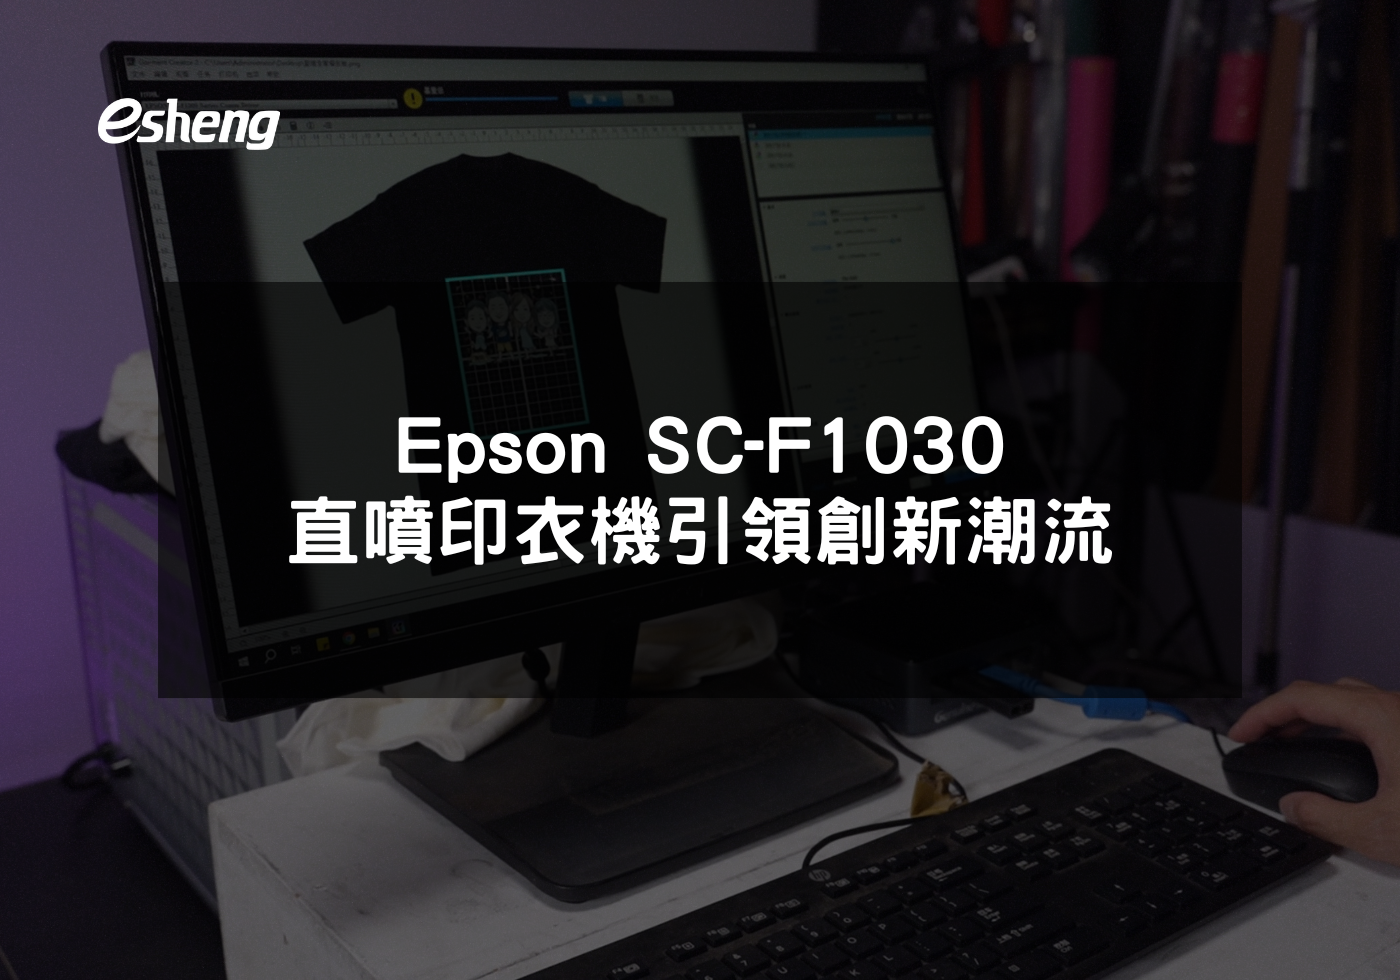 Epson SC-F1030直噴印衣機引領創新潮流